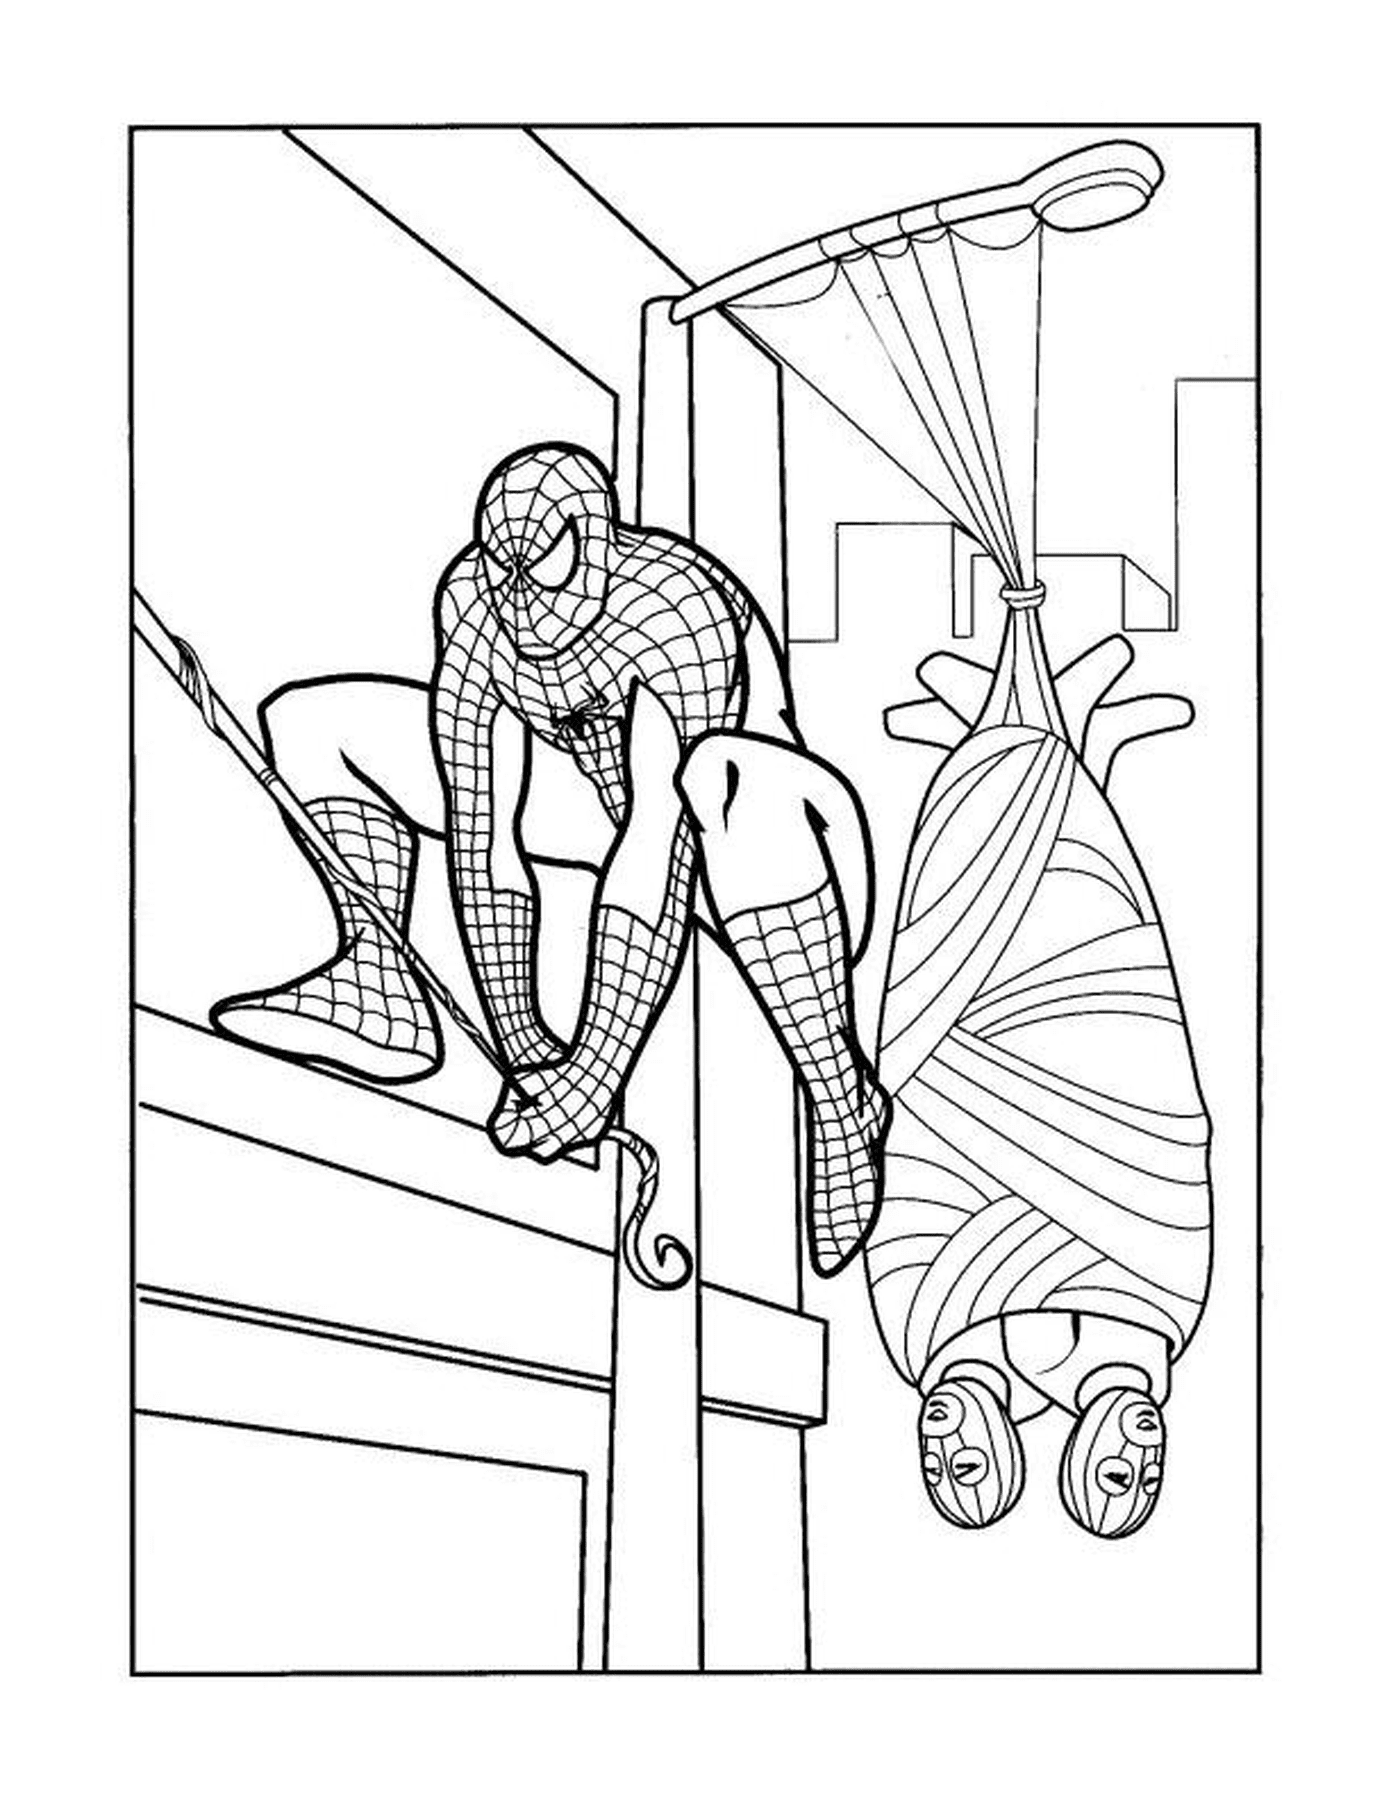  Spiderman escalando un edificio 